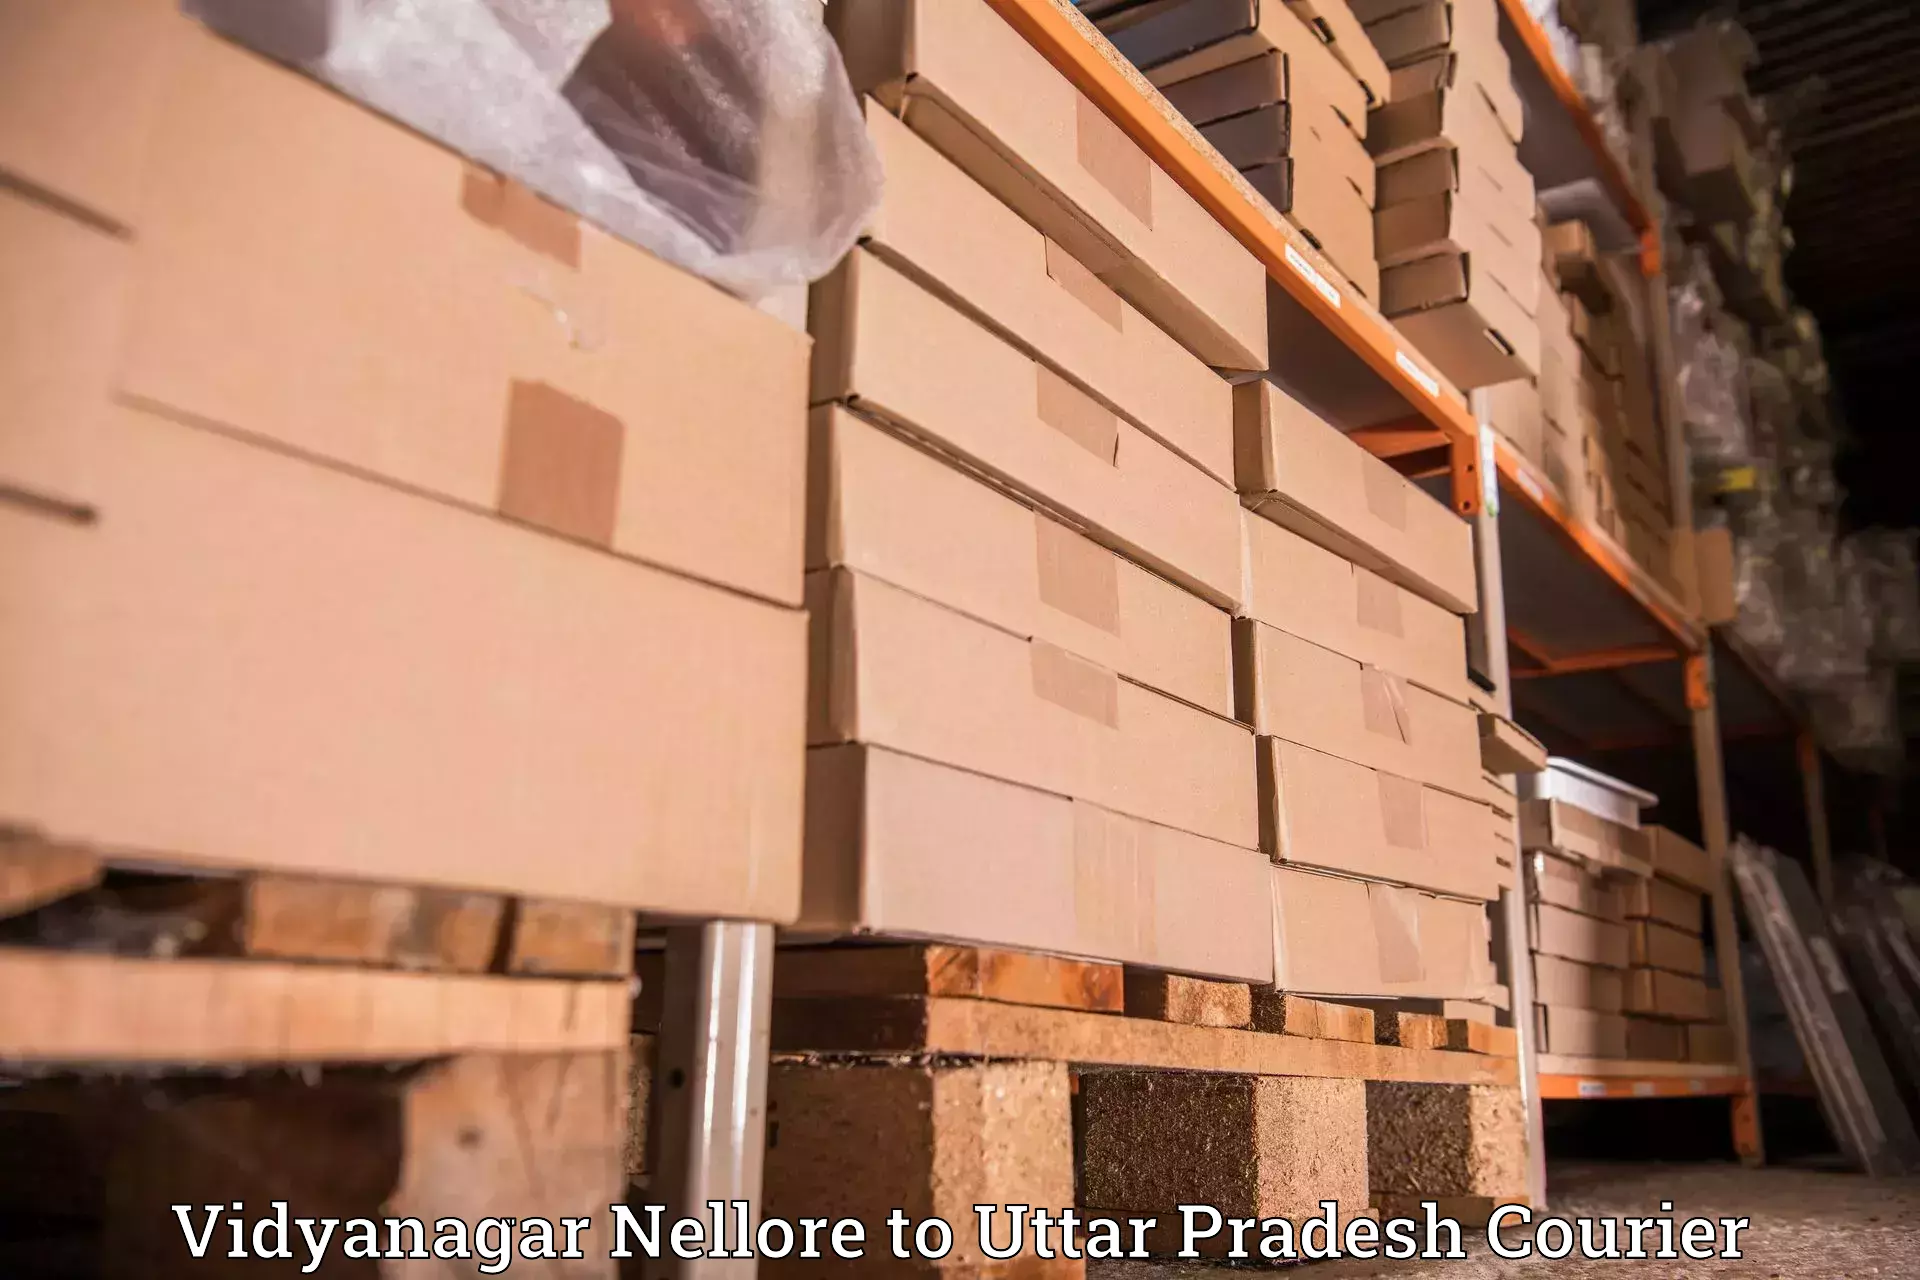 Efficient cargo handling Vidyanagar Nellore to Dullahpur